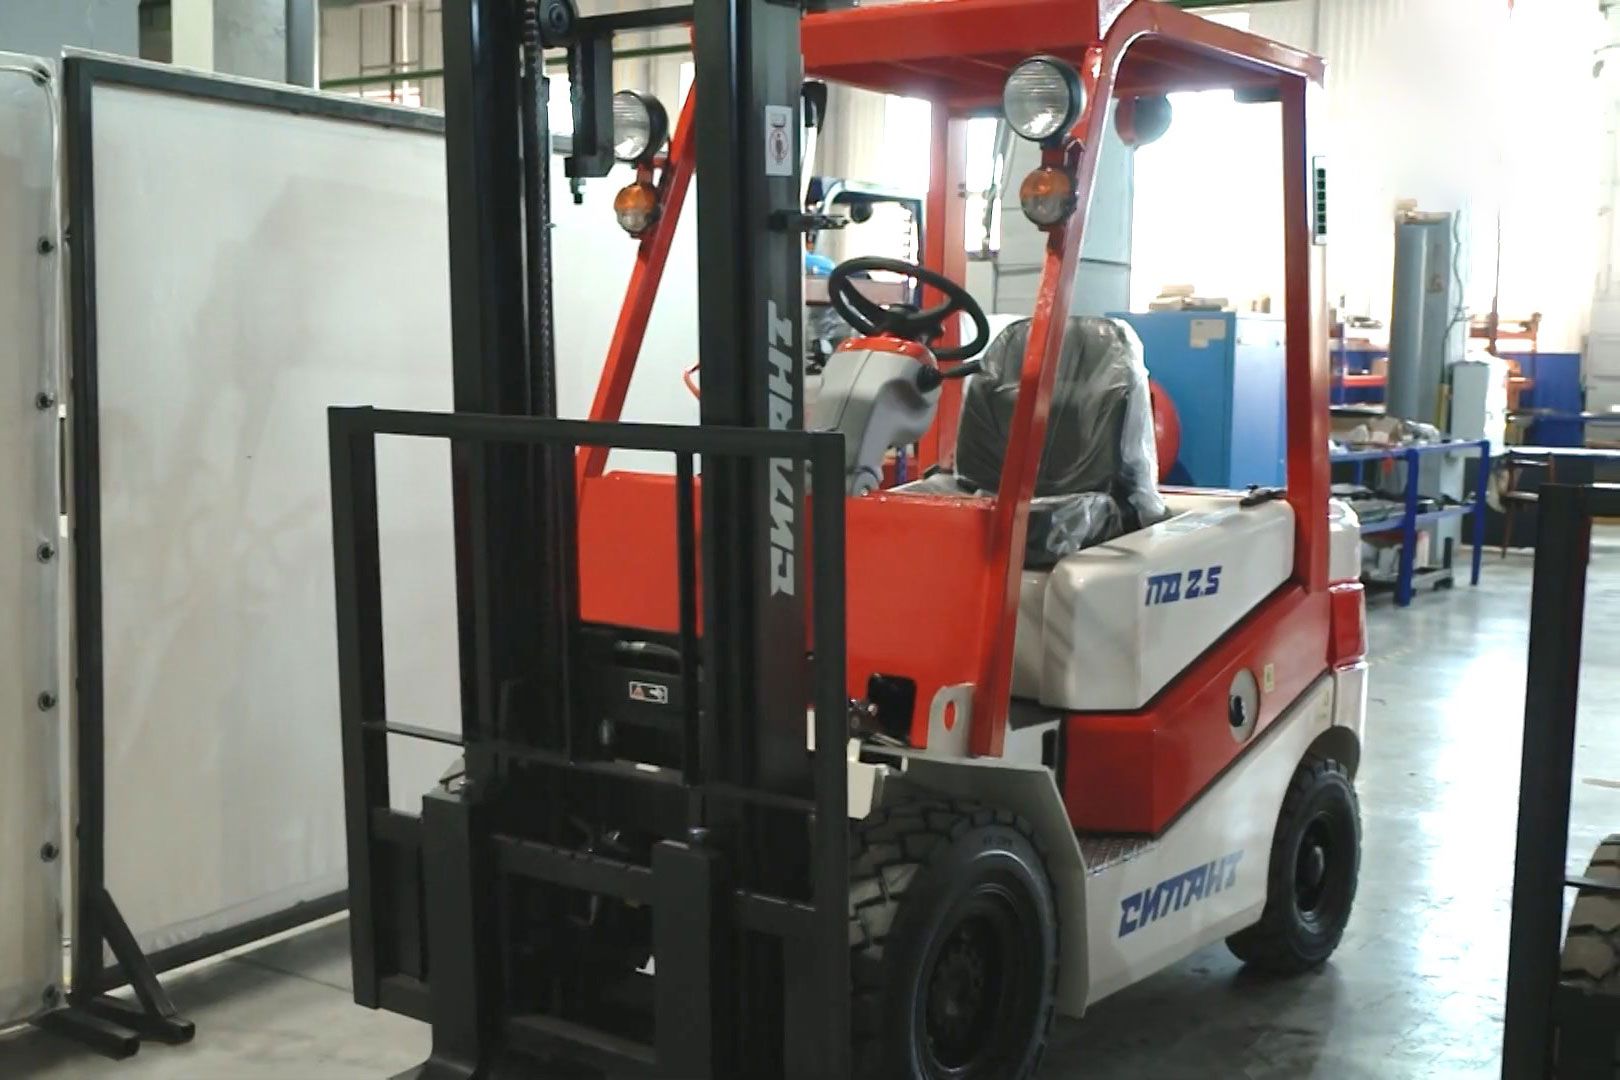 чебоксарский завод специализируется на производстве ходовых для тяжелых тракторов